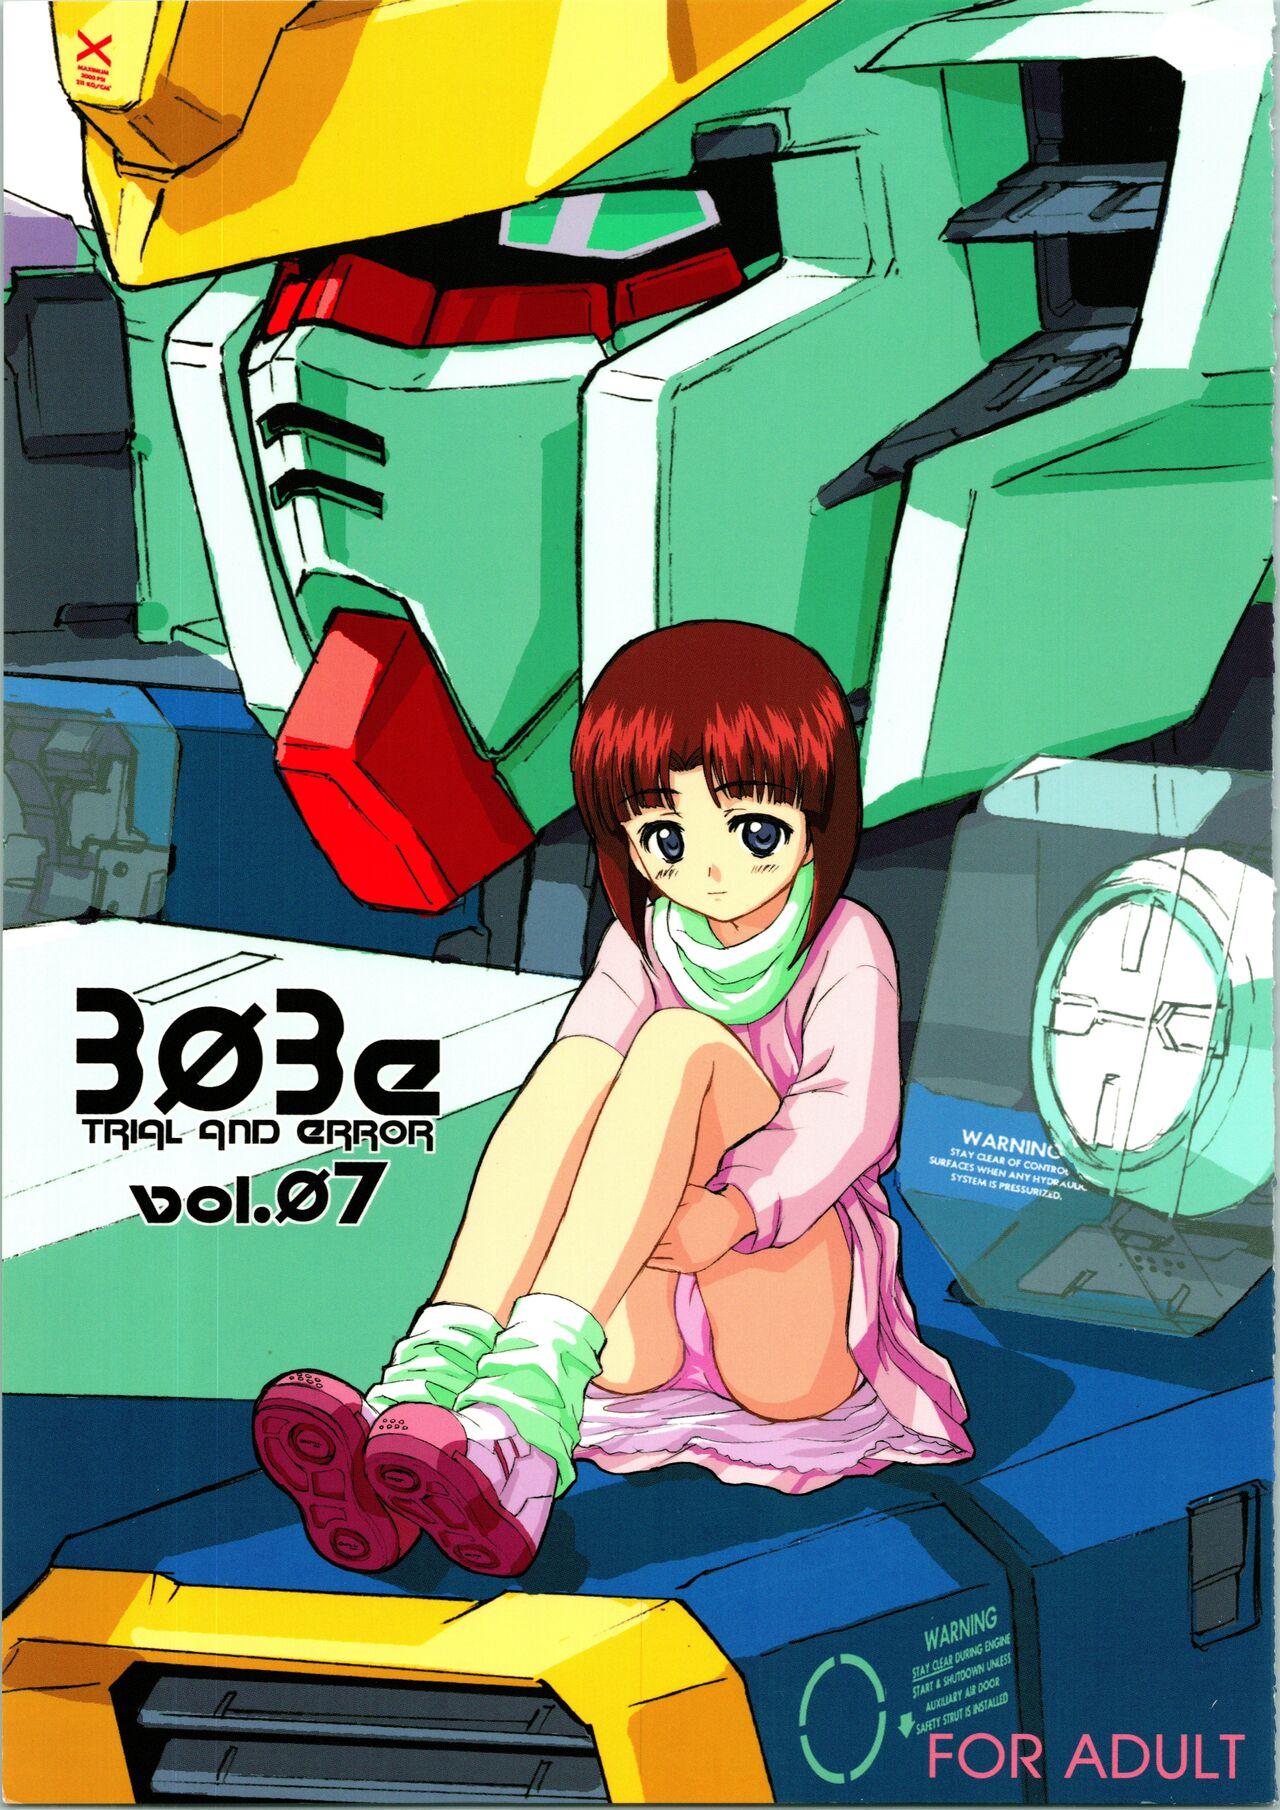 Euro [WINDFALL (Aburaage)] 303e Vol. 07 (Gundam X, R.O.D the TV) ZHOA8229 - Read or die Gundam x Hot Milf - Picture 1